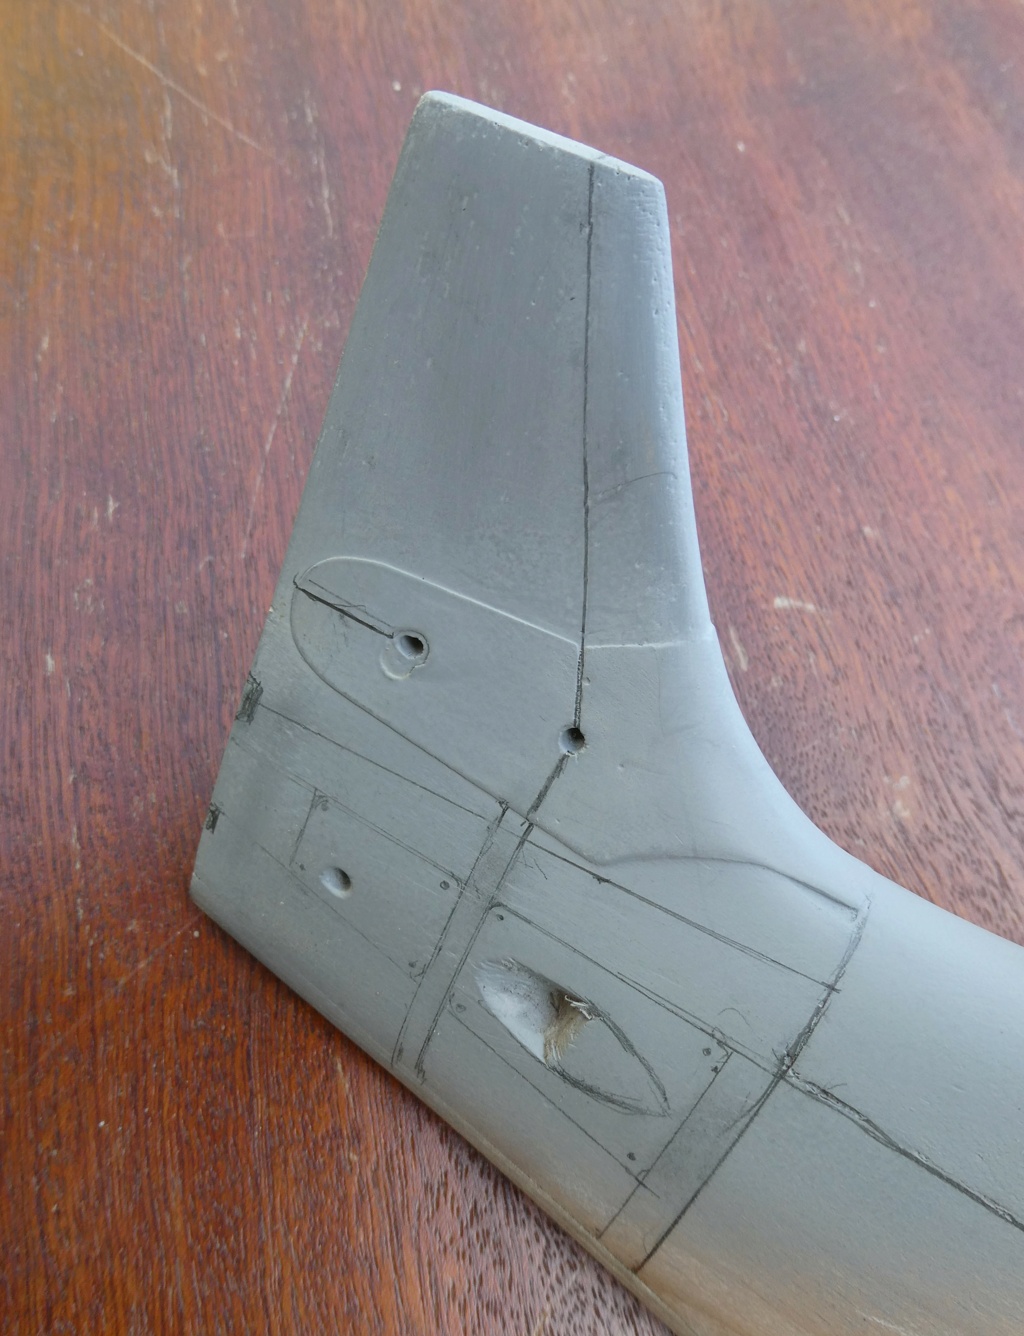 Morane-Saulnier MS.475 Vanneau au 1/16 scratch intégral en bois massif sculpté : fuselage arrière et empennage - Page 6 12120